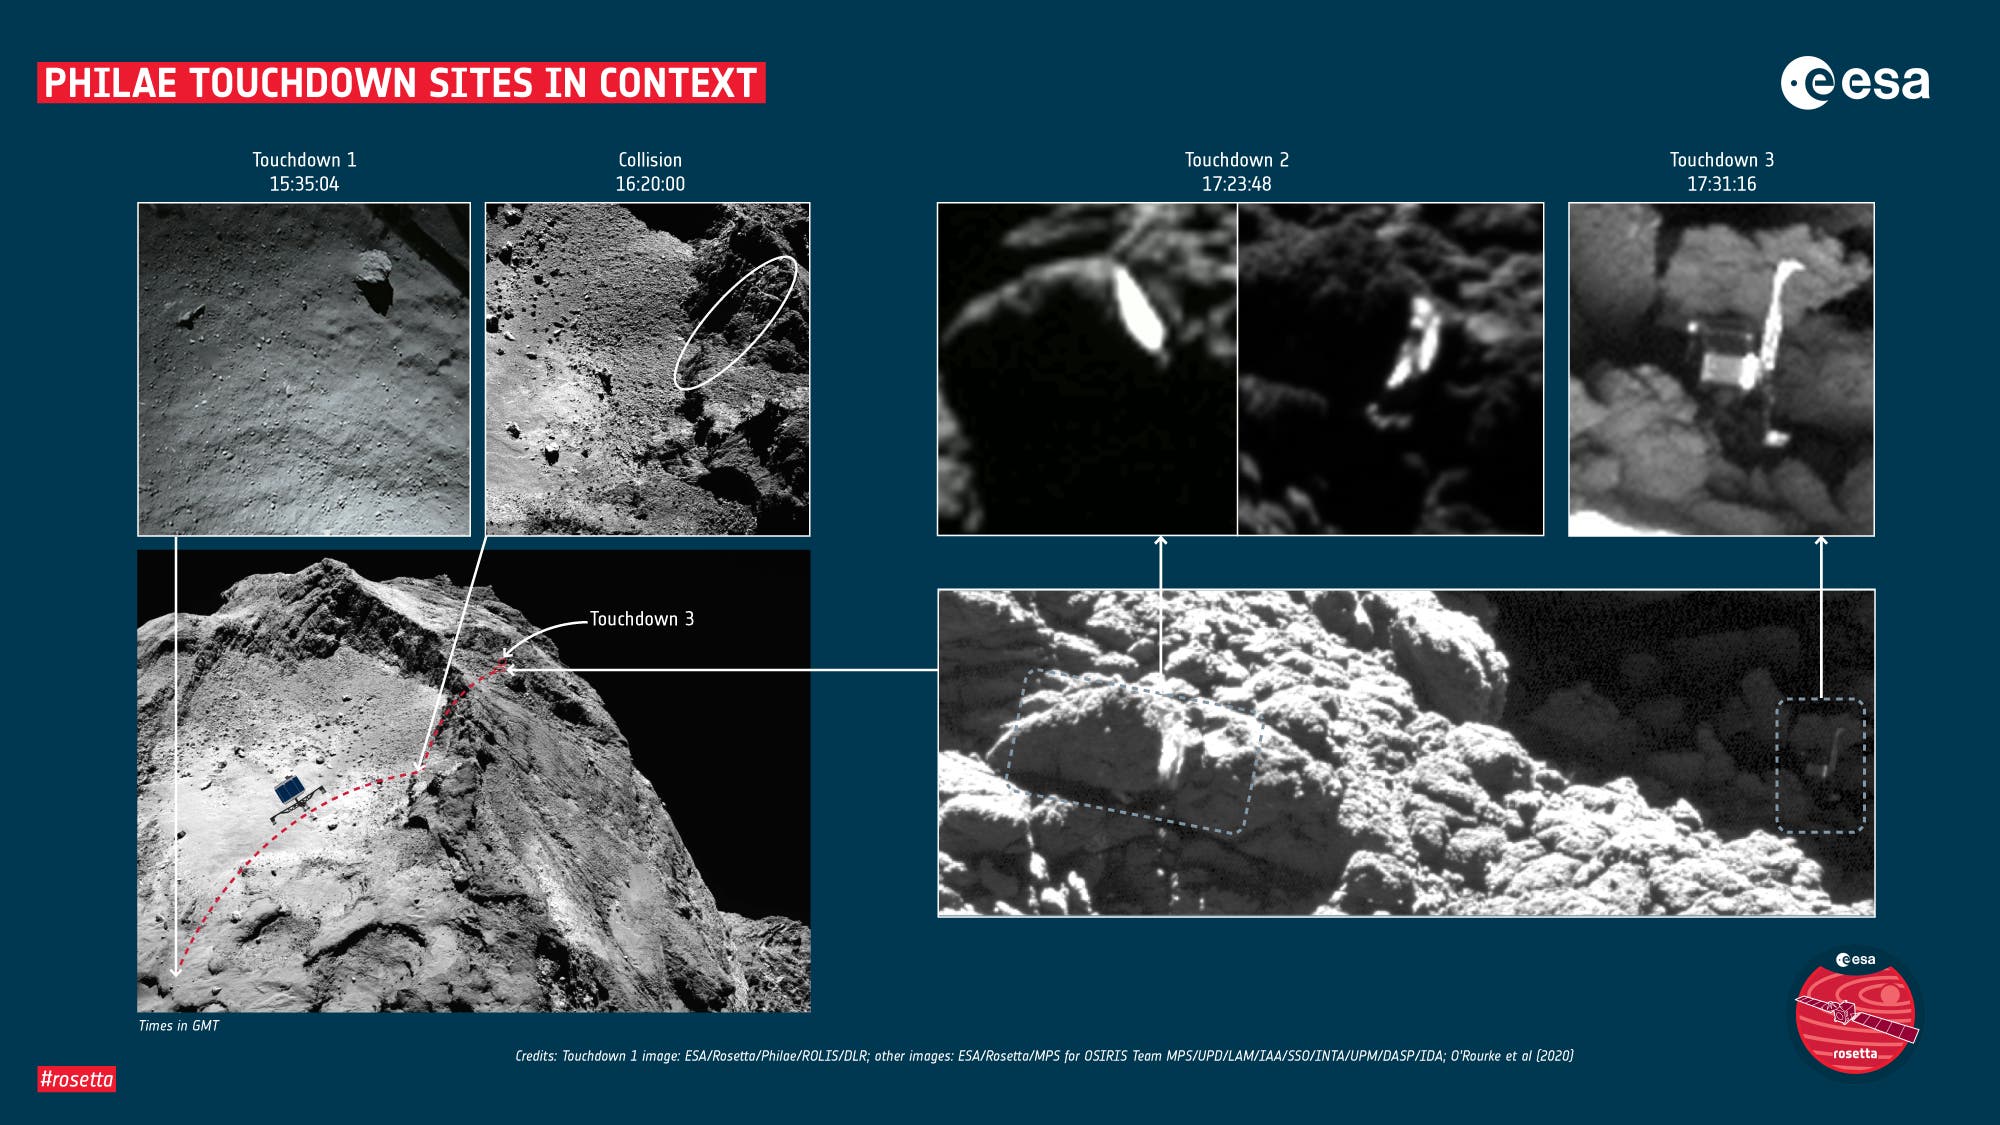 Beim Flug von Philae über die Oberfläche des Kometen 67P/Churyumov-Gerasimenko am 12. November 2014 kollidierte der Lander an mehreren Stellen mit der Oberfläche. Diese Grafik fasst die wichtigsten Aufsetzpunkte zusammen.